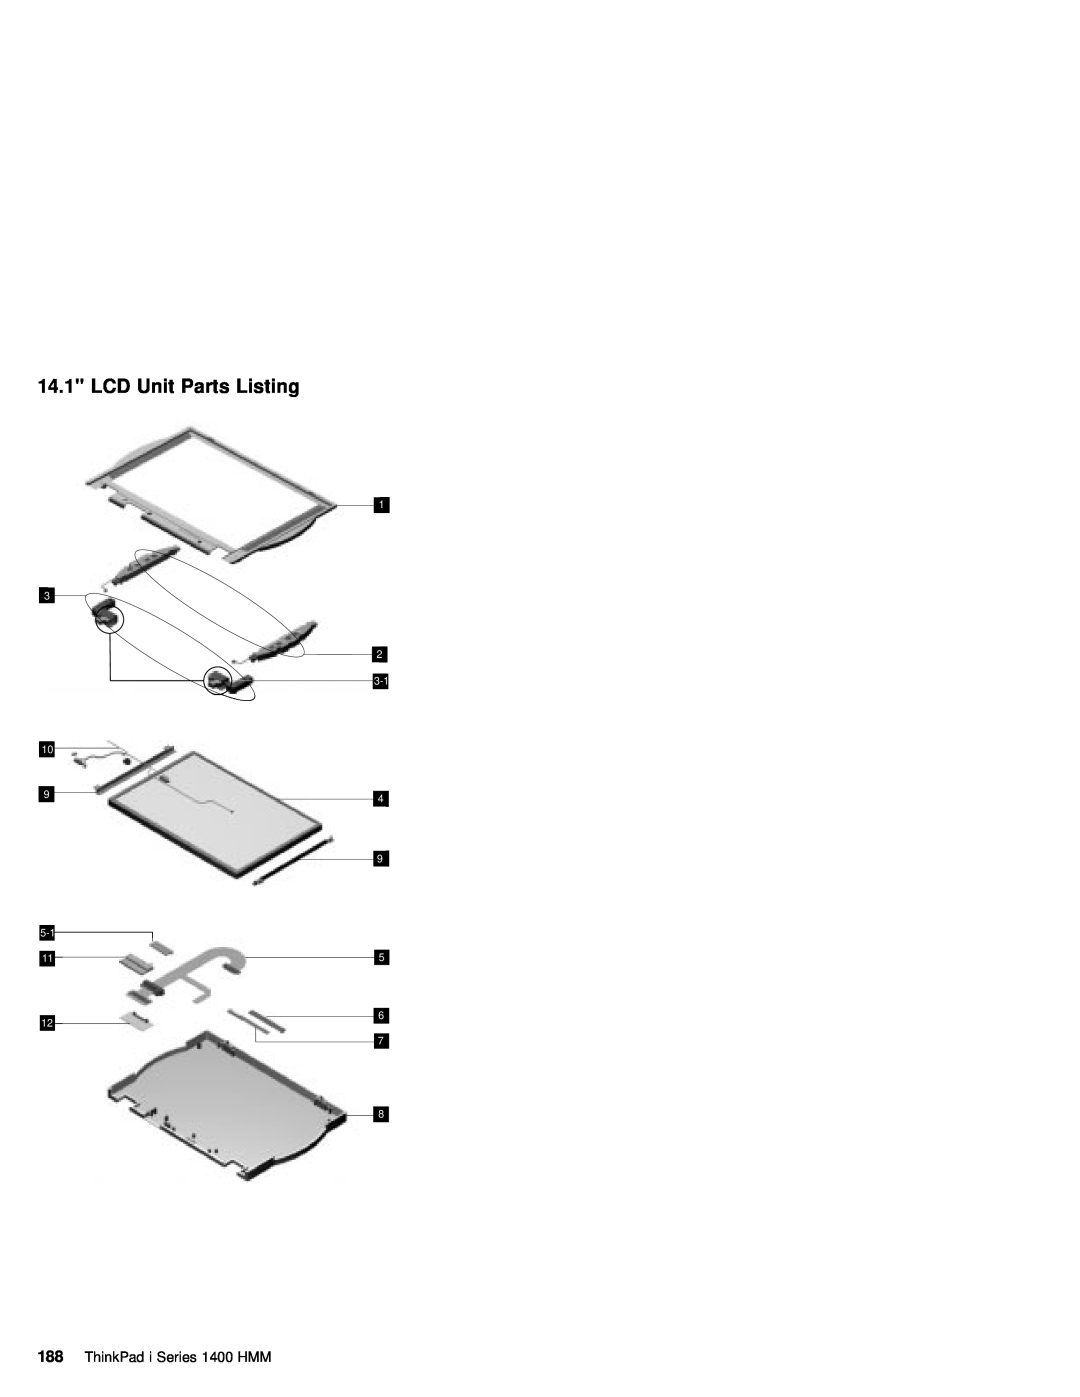 IBM 1400 (2611) manual LCD Unit Parts Listing, ThinkPad i Series 1400 HMM 